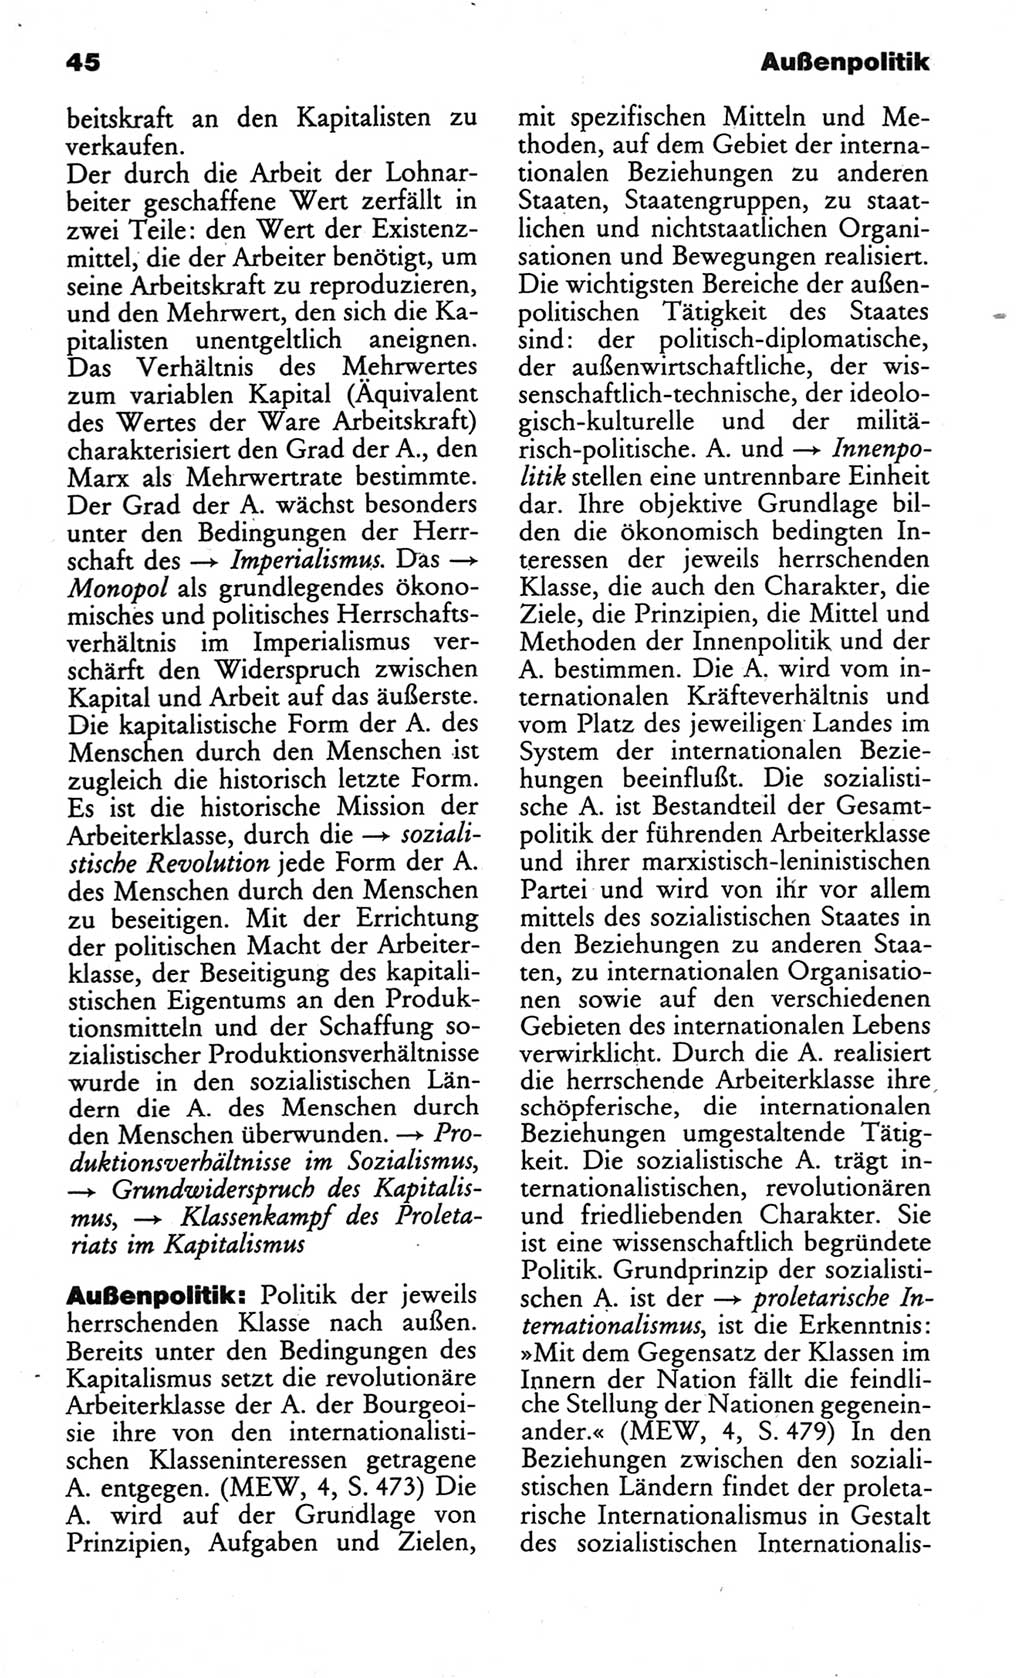 Wörterbuch des wissenschaftlichen Kommunismus [Deutsche Demokratische Republik (DDR)] 1984, Seite 45 (Wb. wiss. Komm. DDR 1984, S. 45)